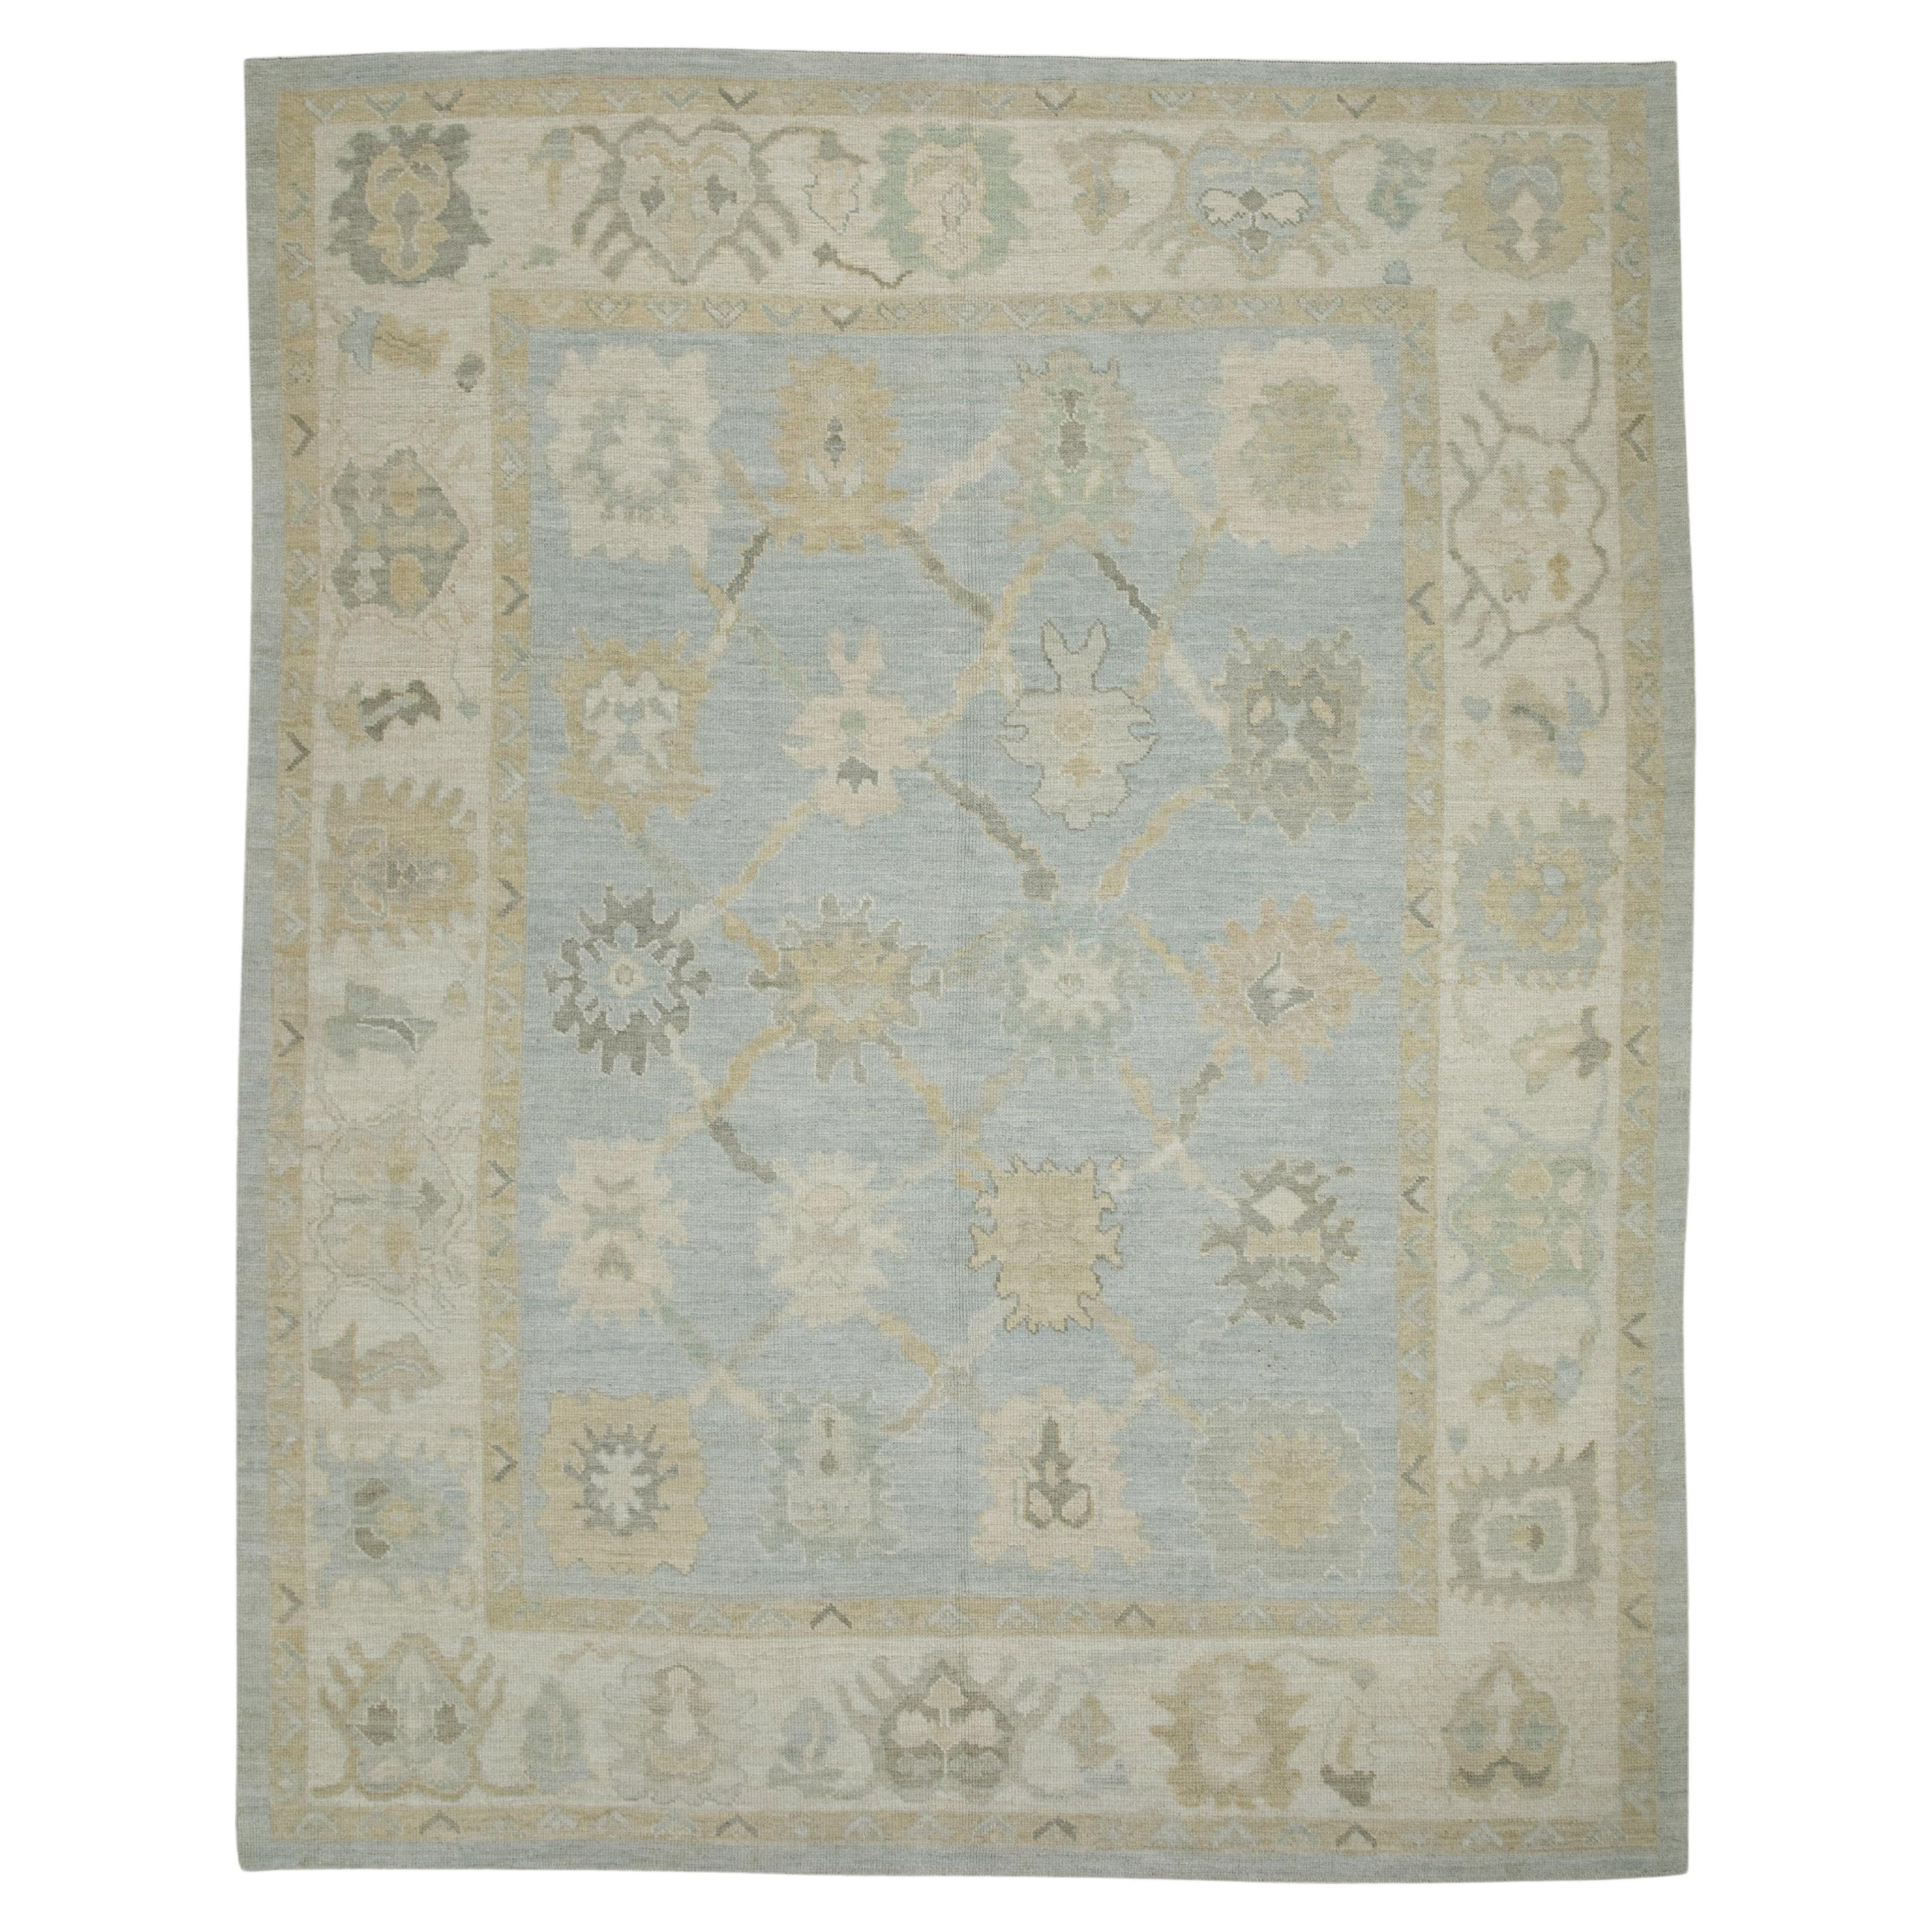 Tapis turc Oushak en laine à motifs floraux bleus tissés à la main 8' x 10'3".